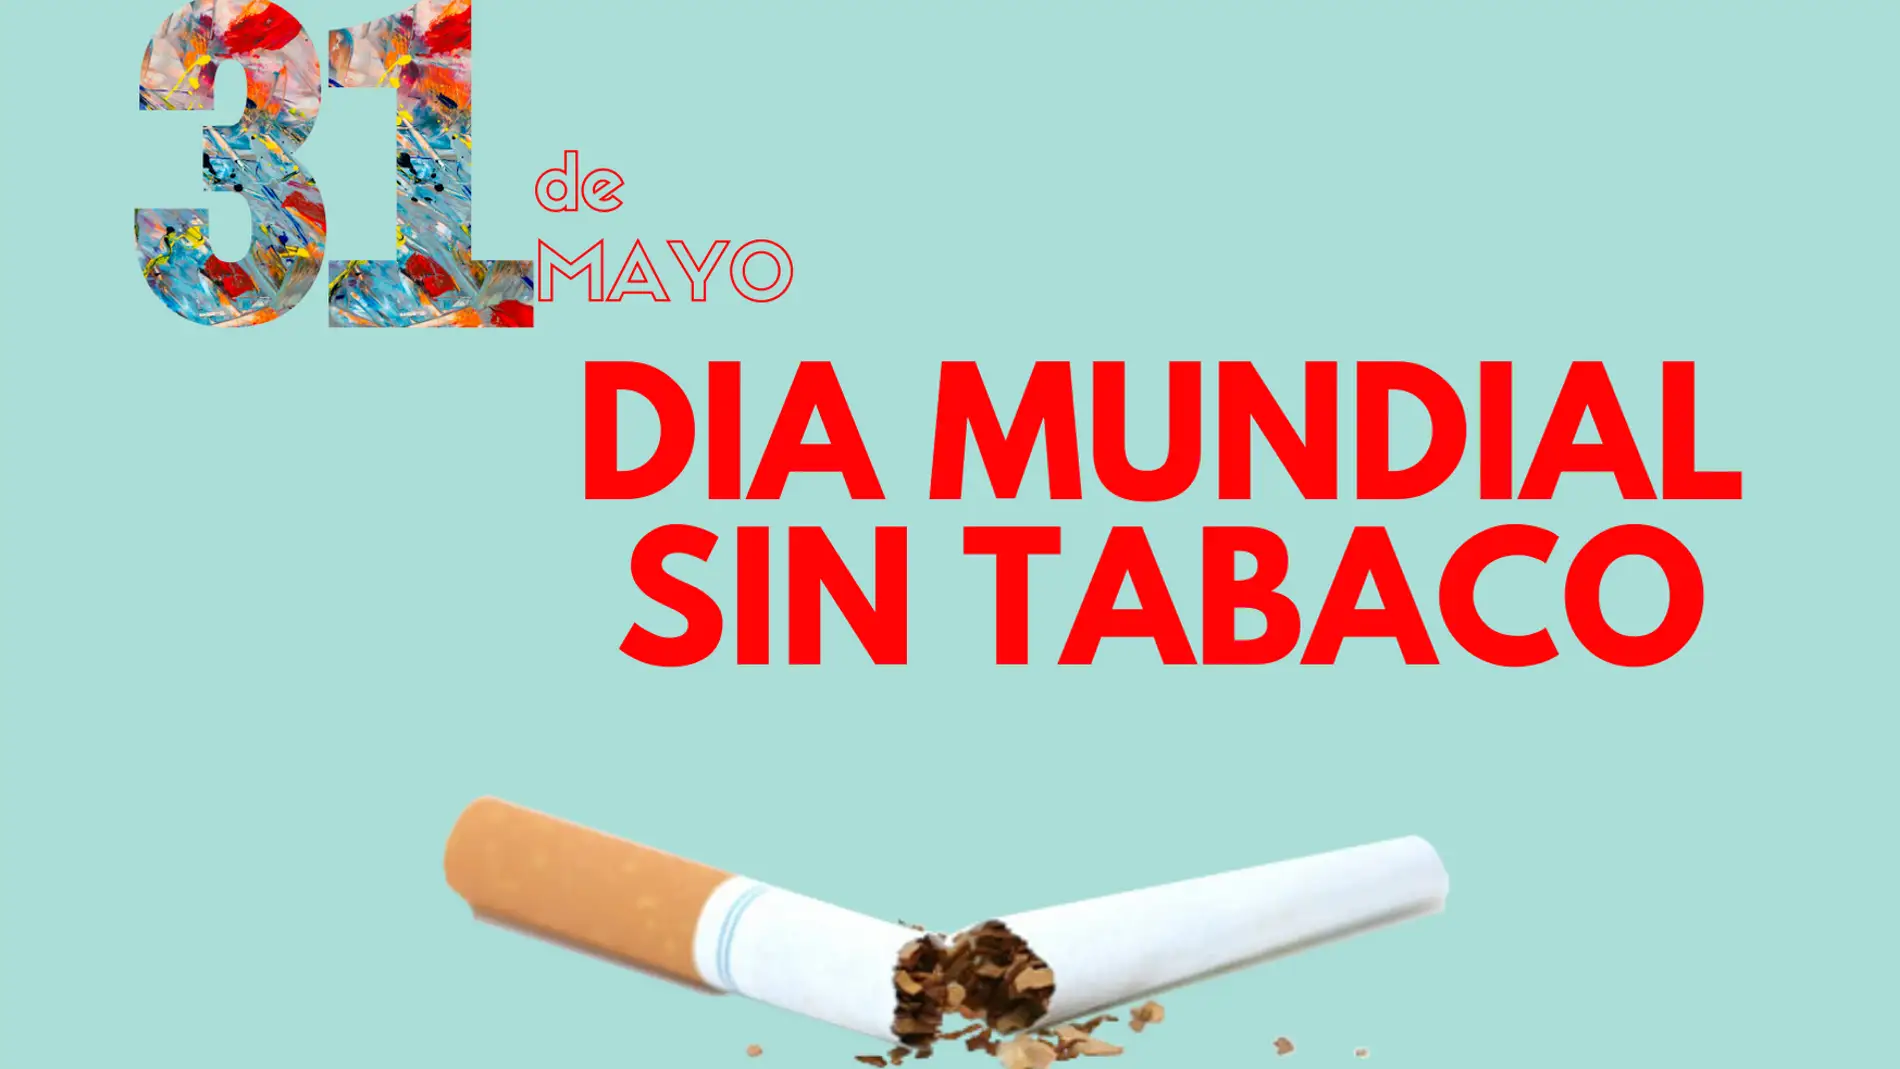 El Hospital Universitario de Badajoz y el centro de salud La Paz instalan mesas informativas con motivo del Día Mundial Sin Tabaco